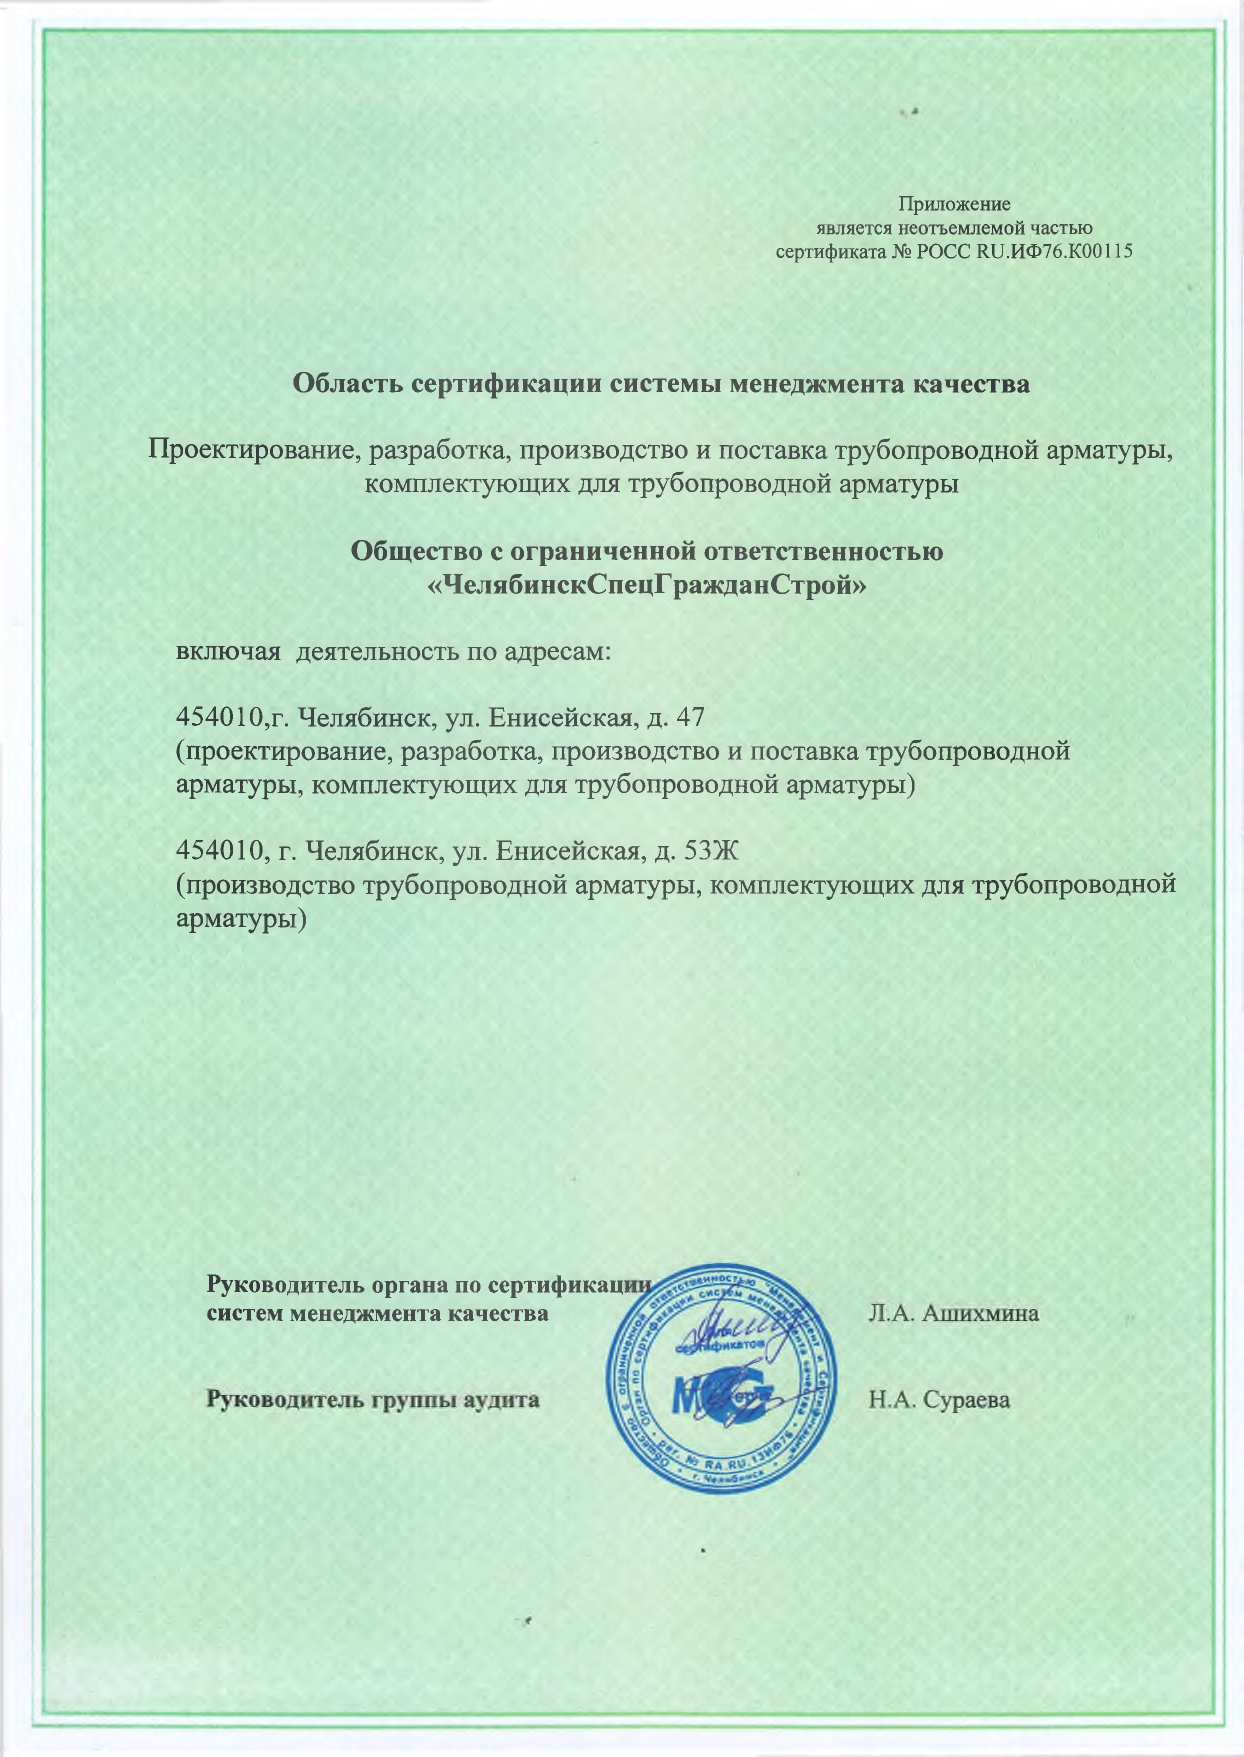 Приложение к Сертификату соответствия № 0024